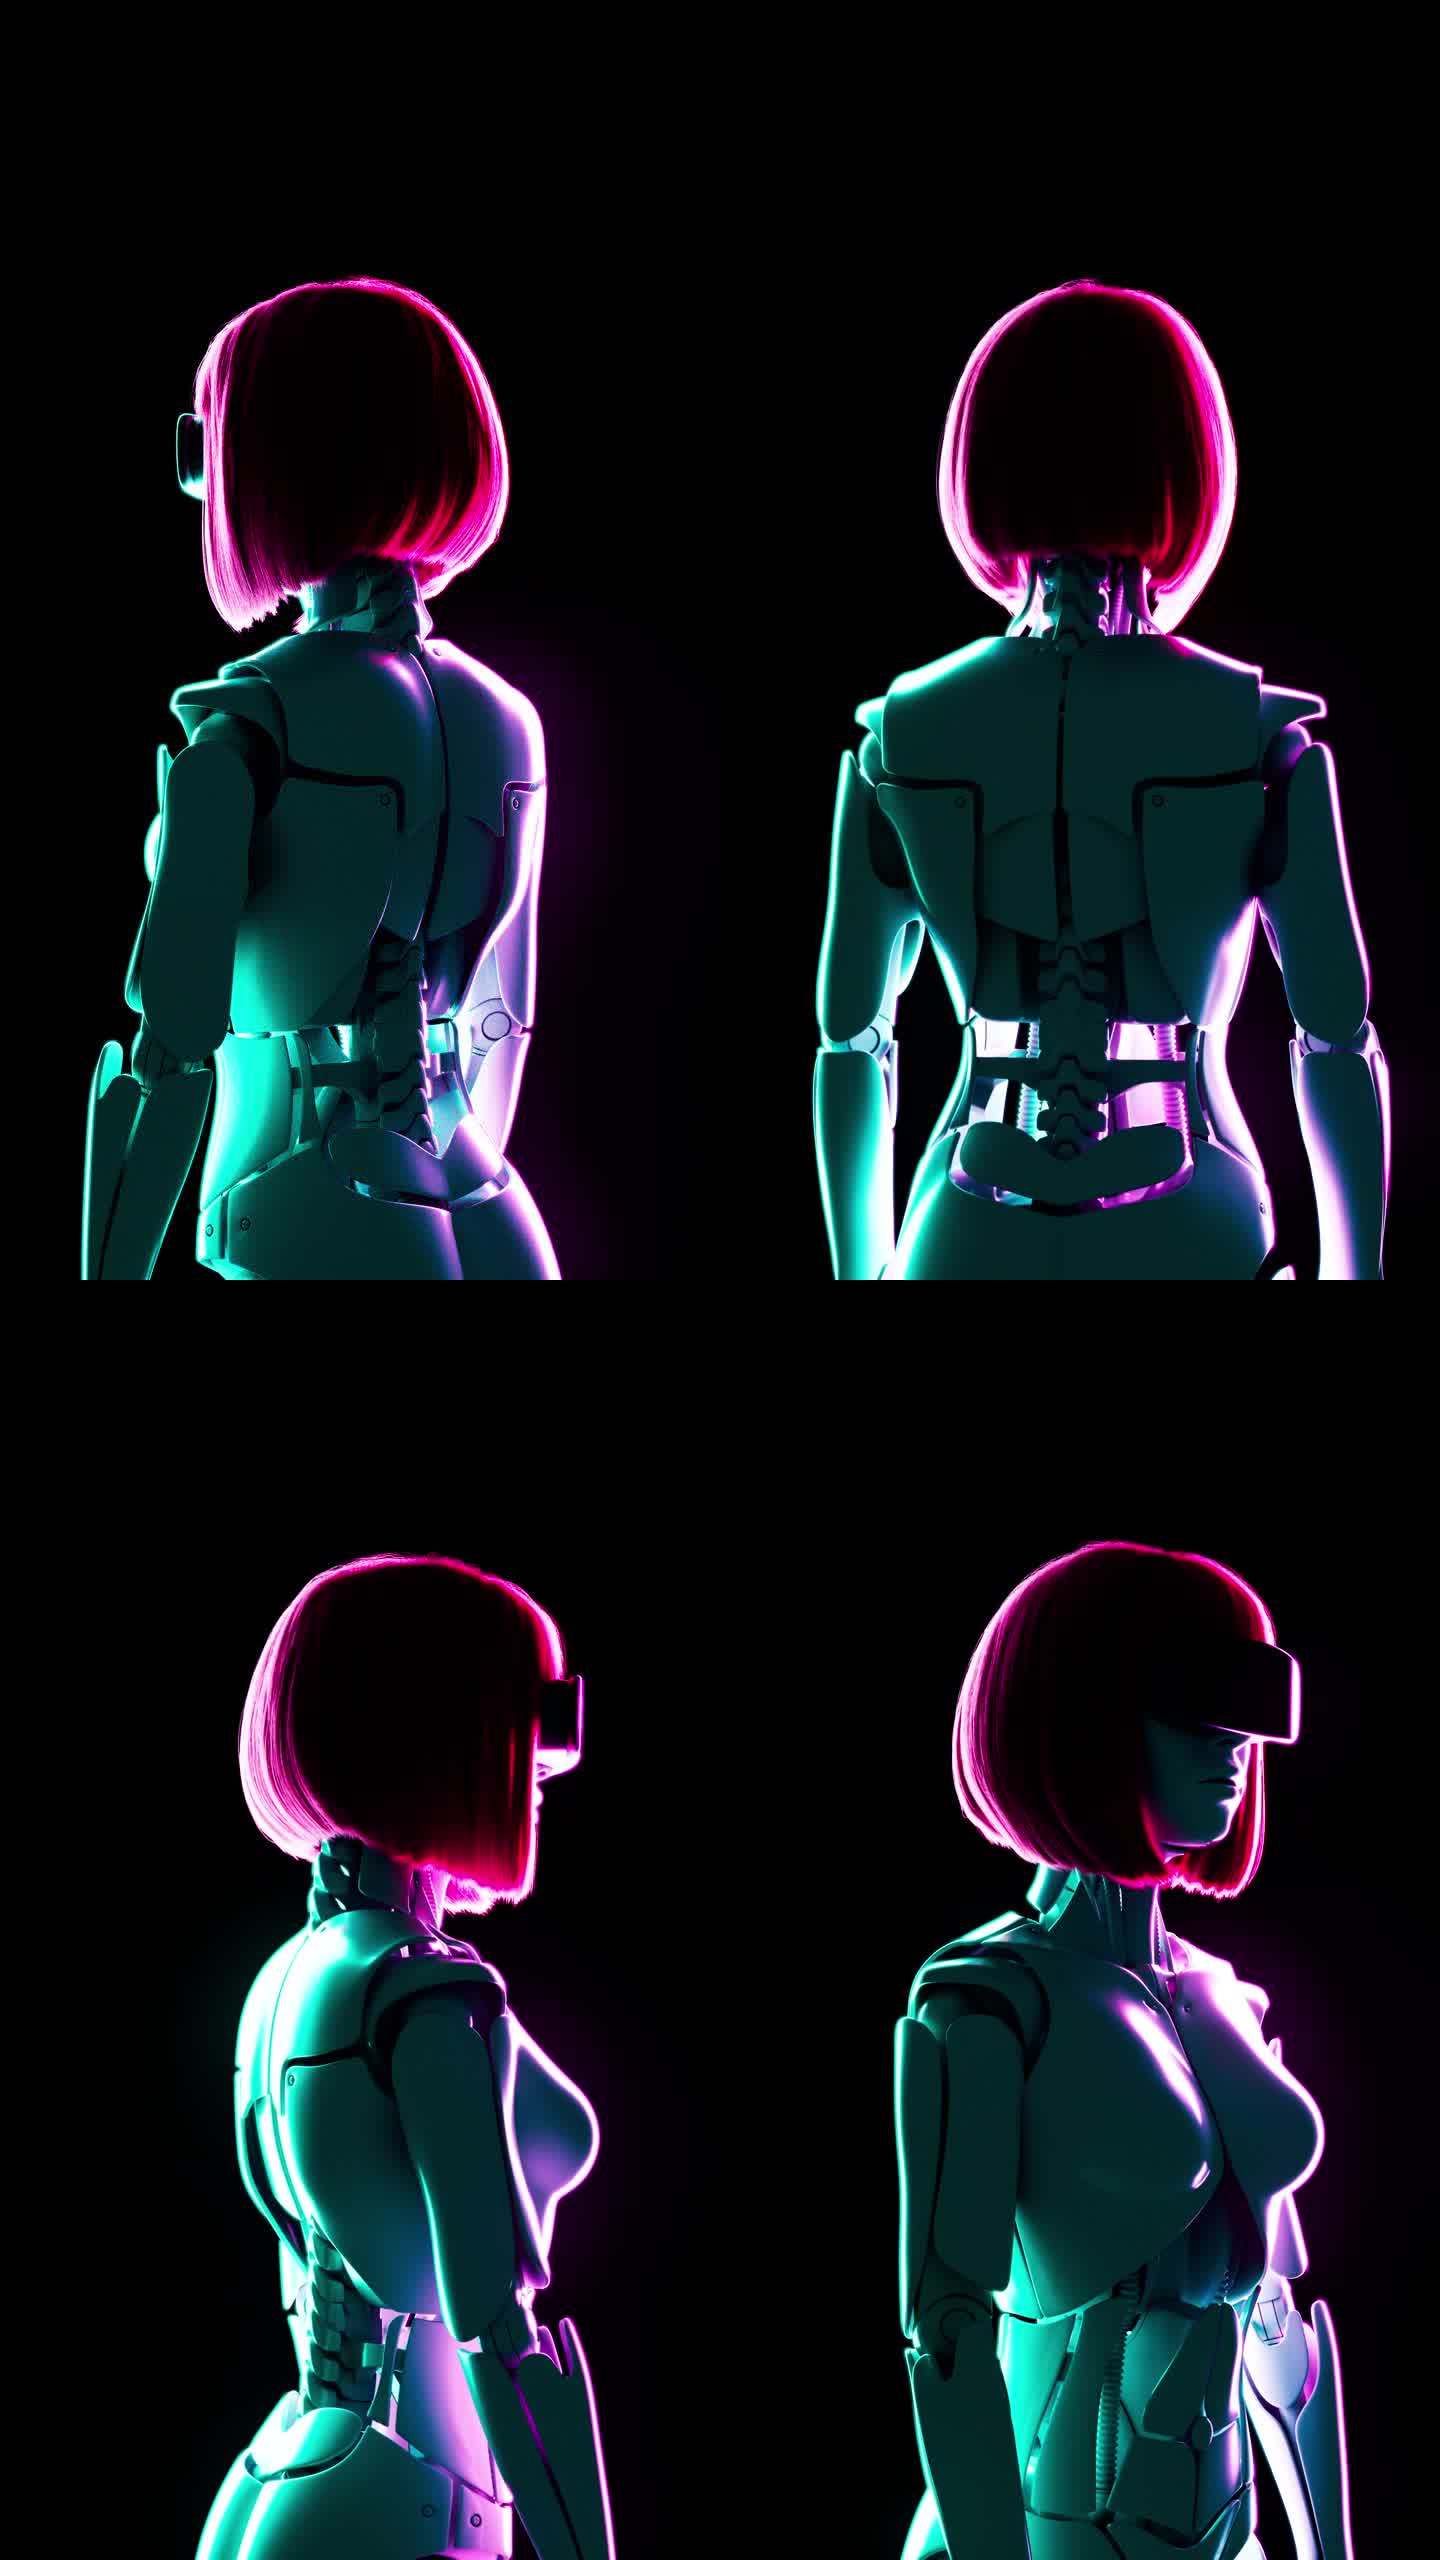 一个戴着VR眼镜的粉色亮发半机械人女孩被霓虹灯照亮